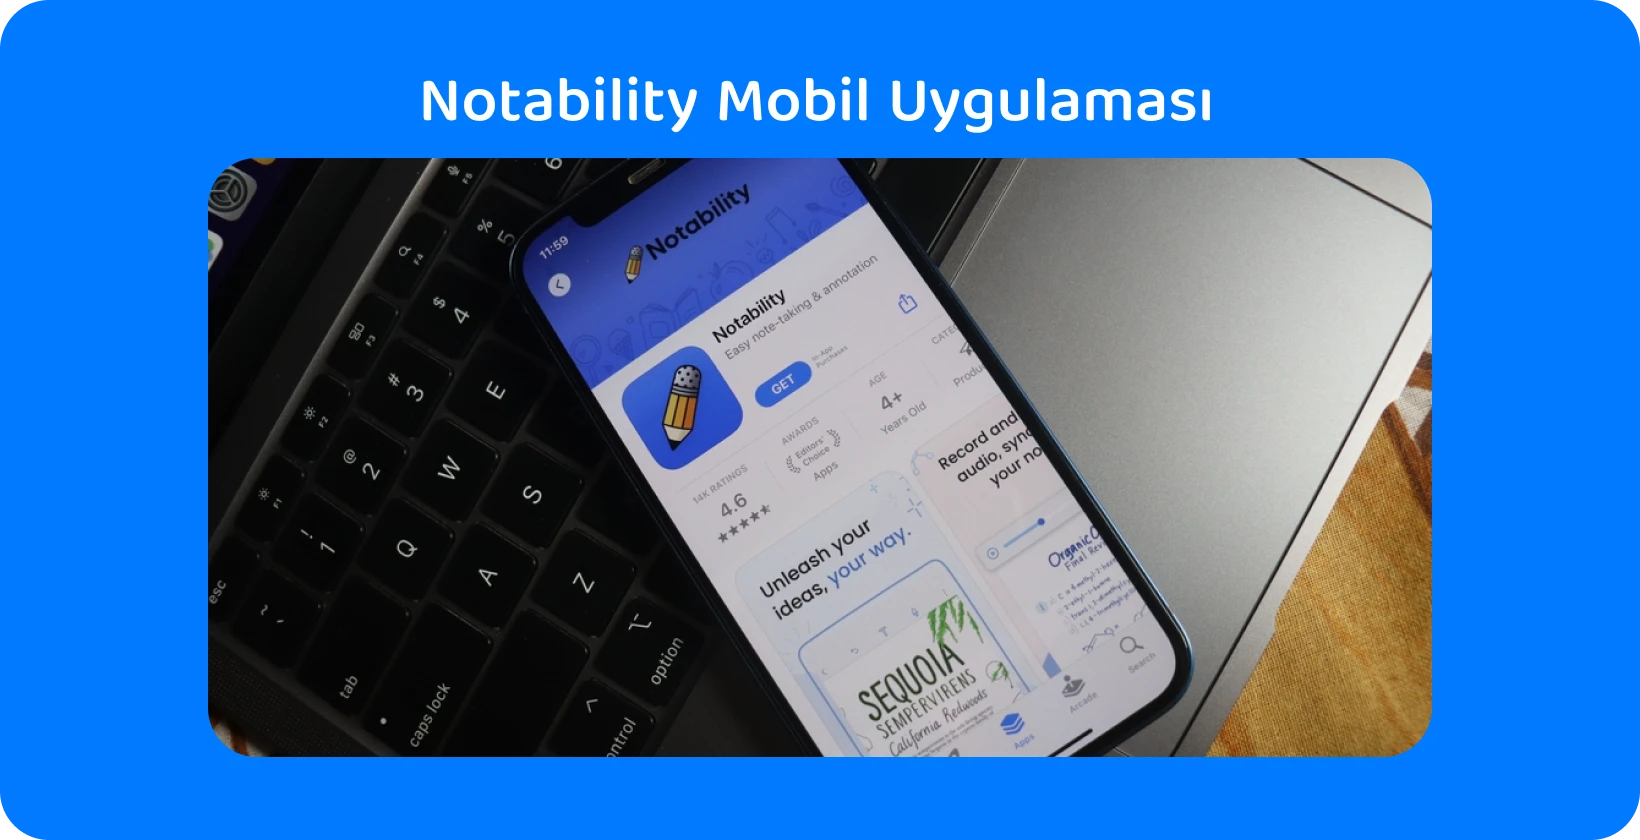 Notability uygulaması, sesten metne özelliklerini sergileyen transkripsiyon özelliğine sahip akıllı telefon ekranında.